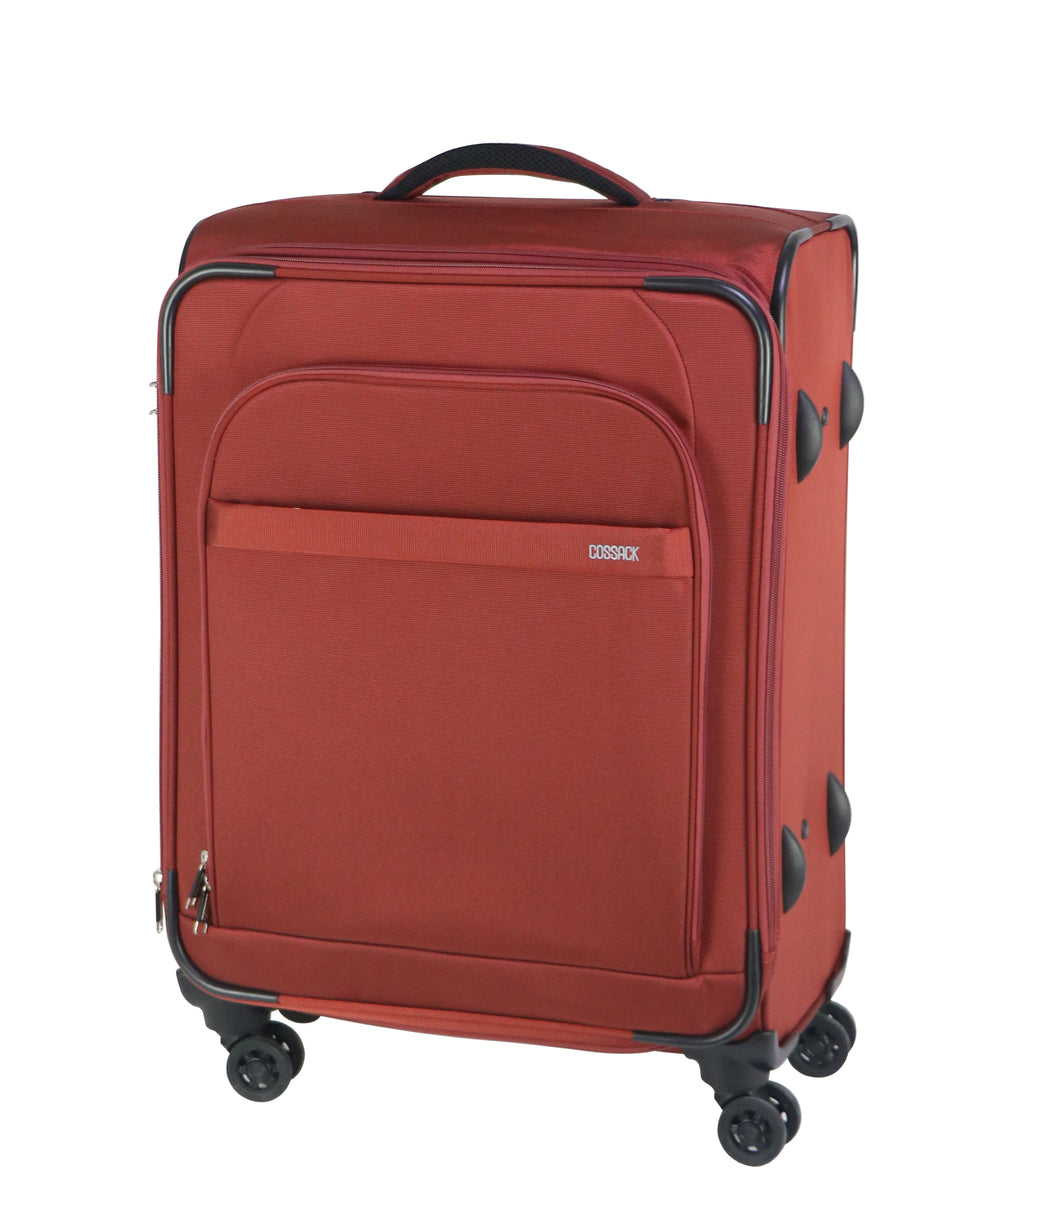 COSSACK-24吋拉鍊行李箱(1223領航系列)-熱帶紅